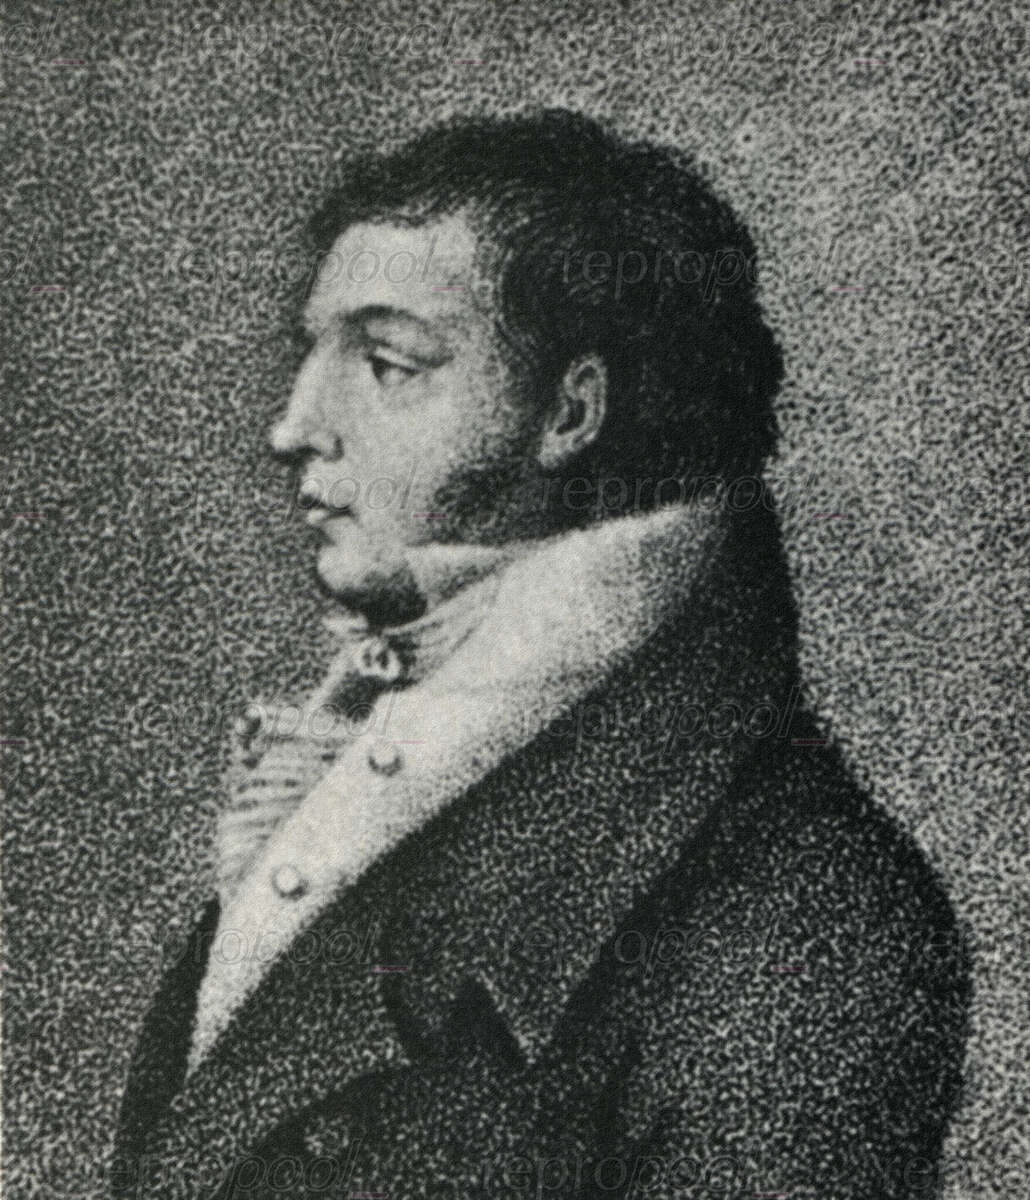 Eliodoro Bianchi; Stahlstich von Luigi Rados (um 1800)